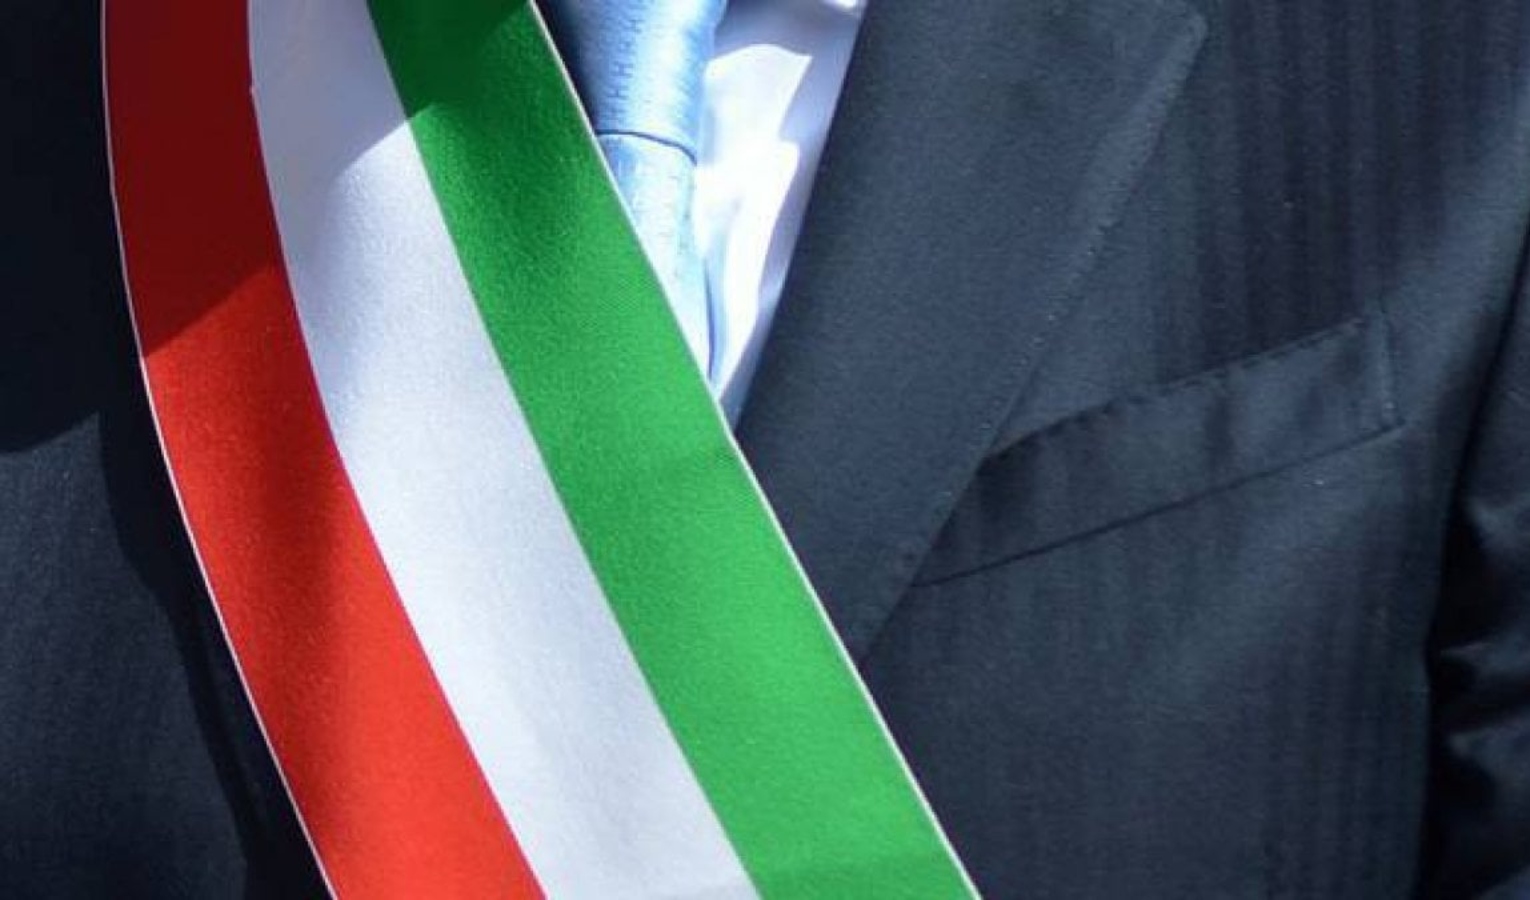 Elezioni comunali in Liguria, candidati unici: ecco i sindaci già eletti